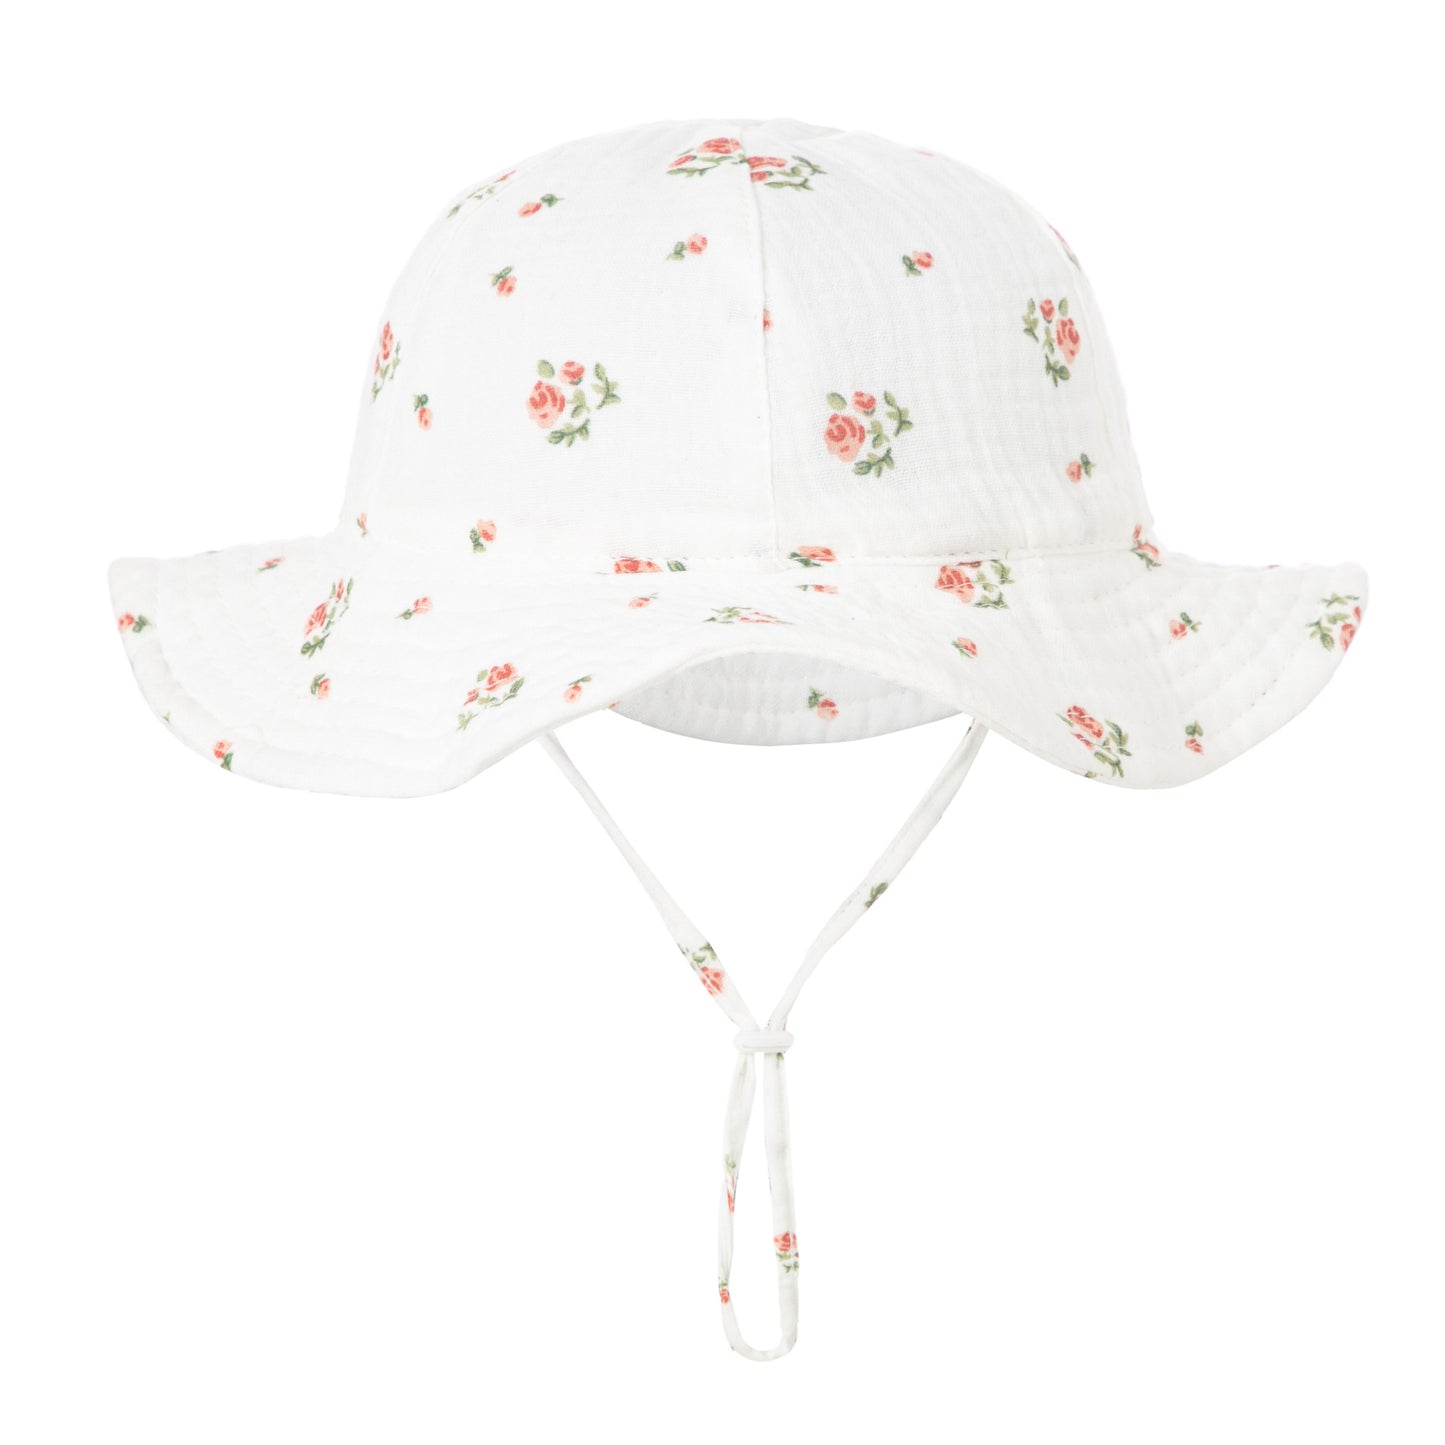 0-12M Baby Cotton Bucket Hat Cotton Gauze Breathable Boy Girl Newborn Kid Accessories